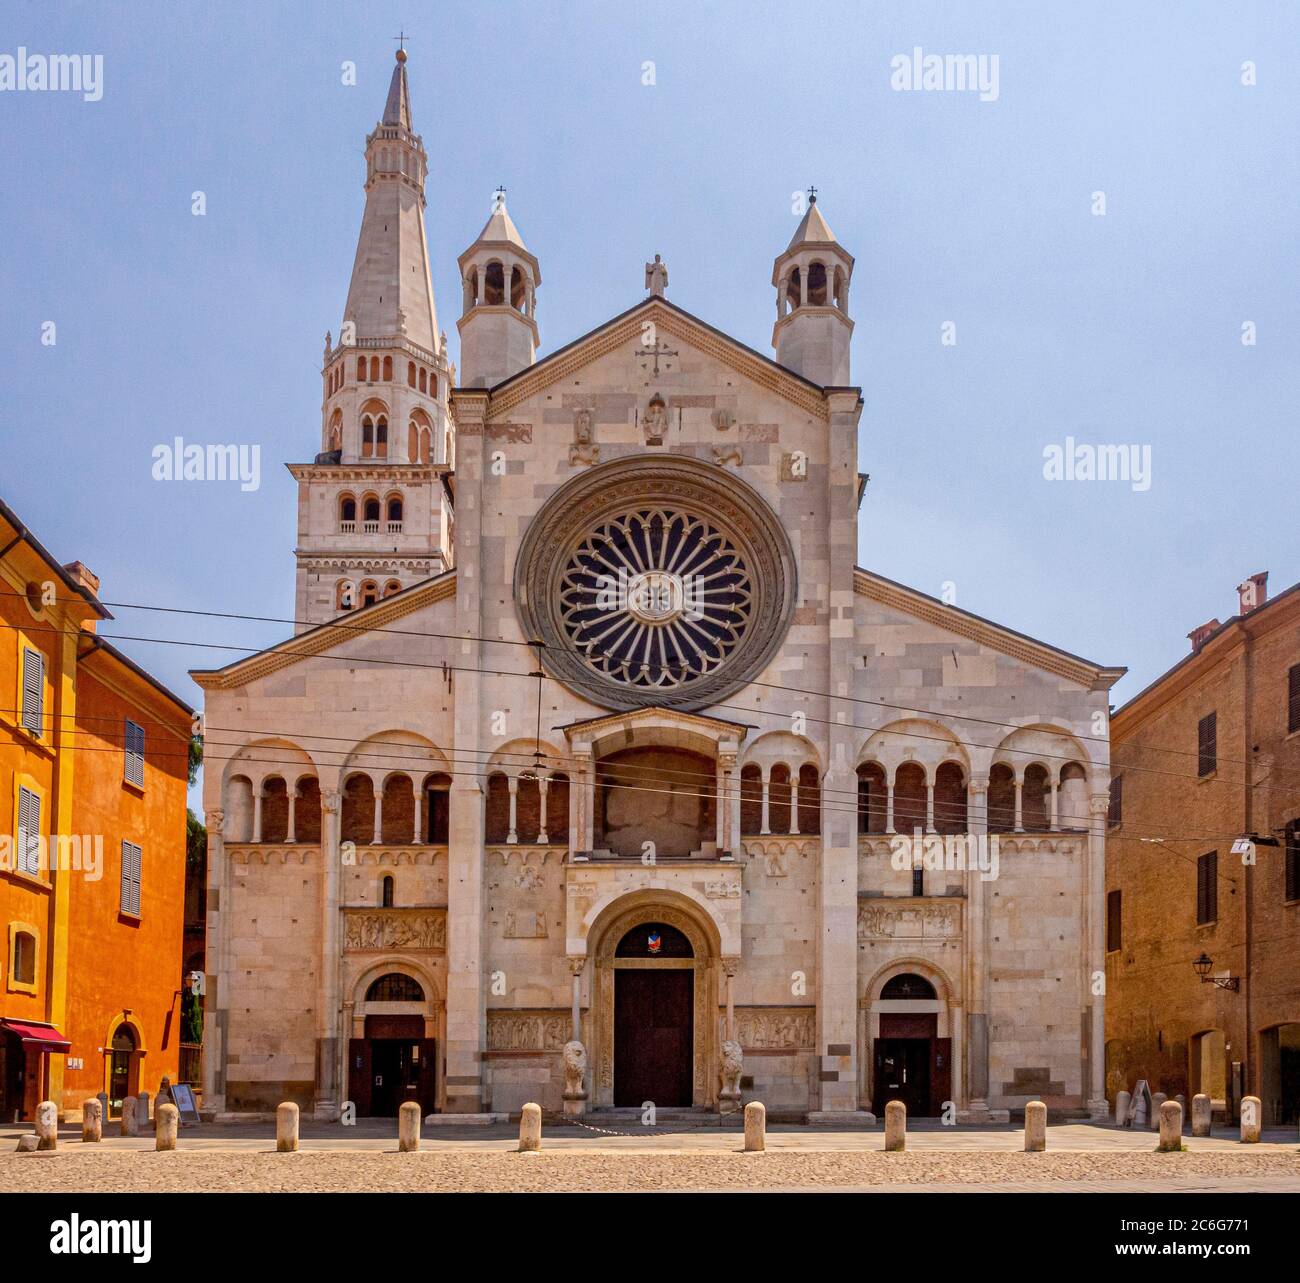 Duomo di modena immagini e fotografie stock ad alta risoluzione - Alamy